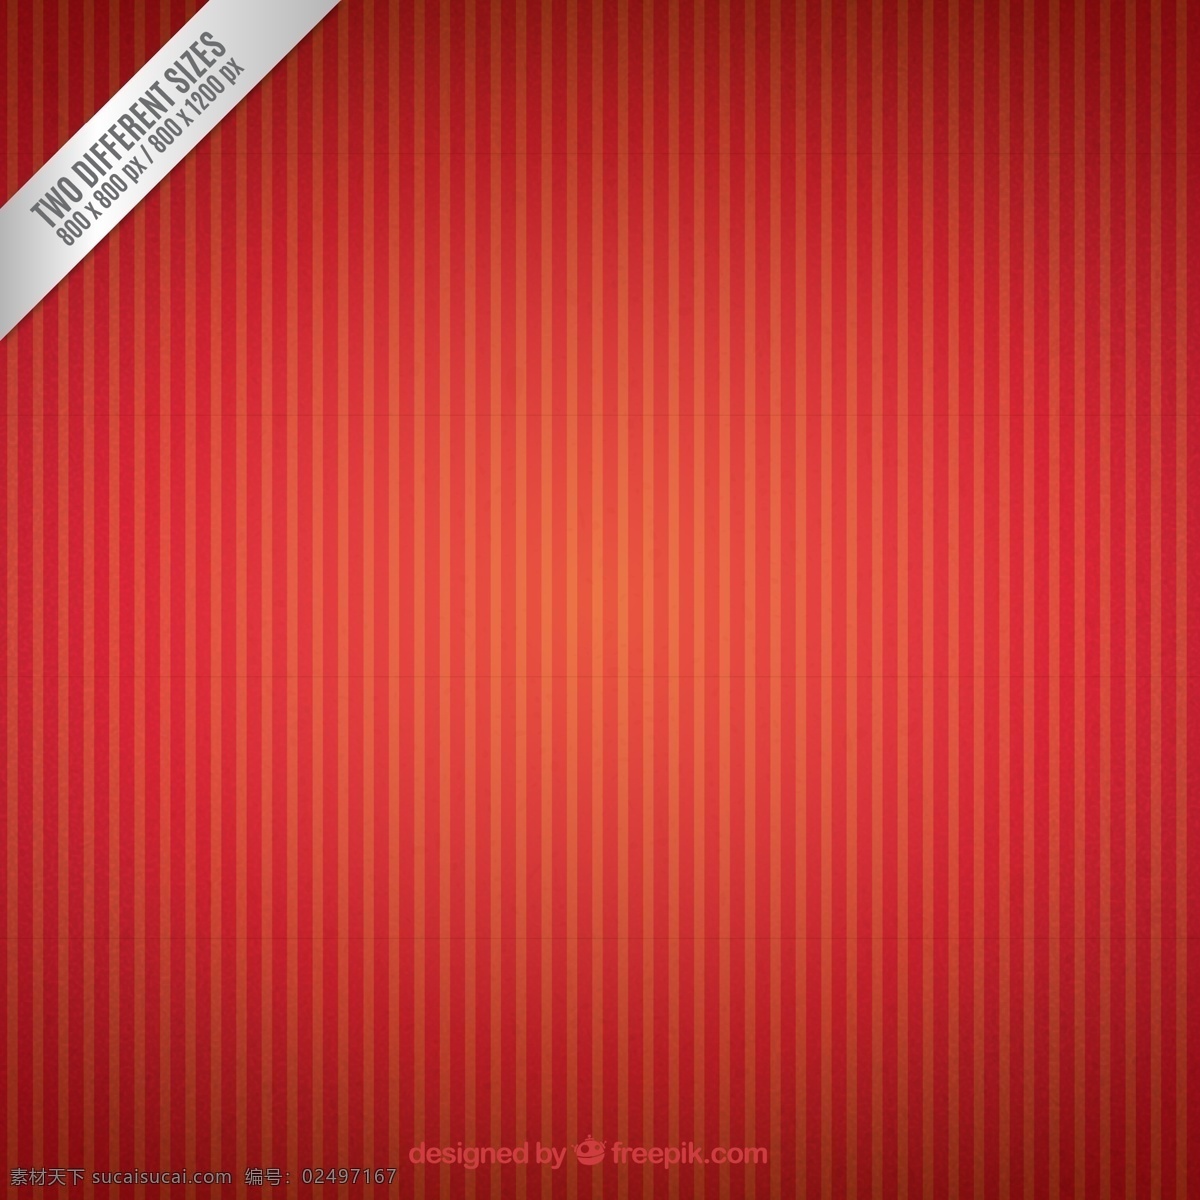 红色 竖 条纹 背景 矢量 竖条纹 矢量图 矢量素材